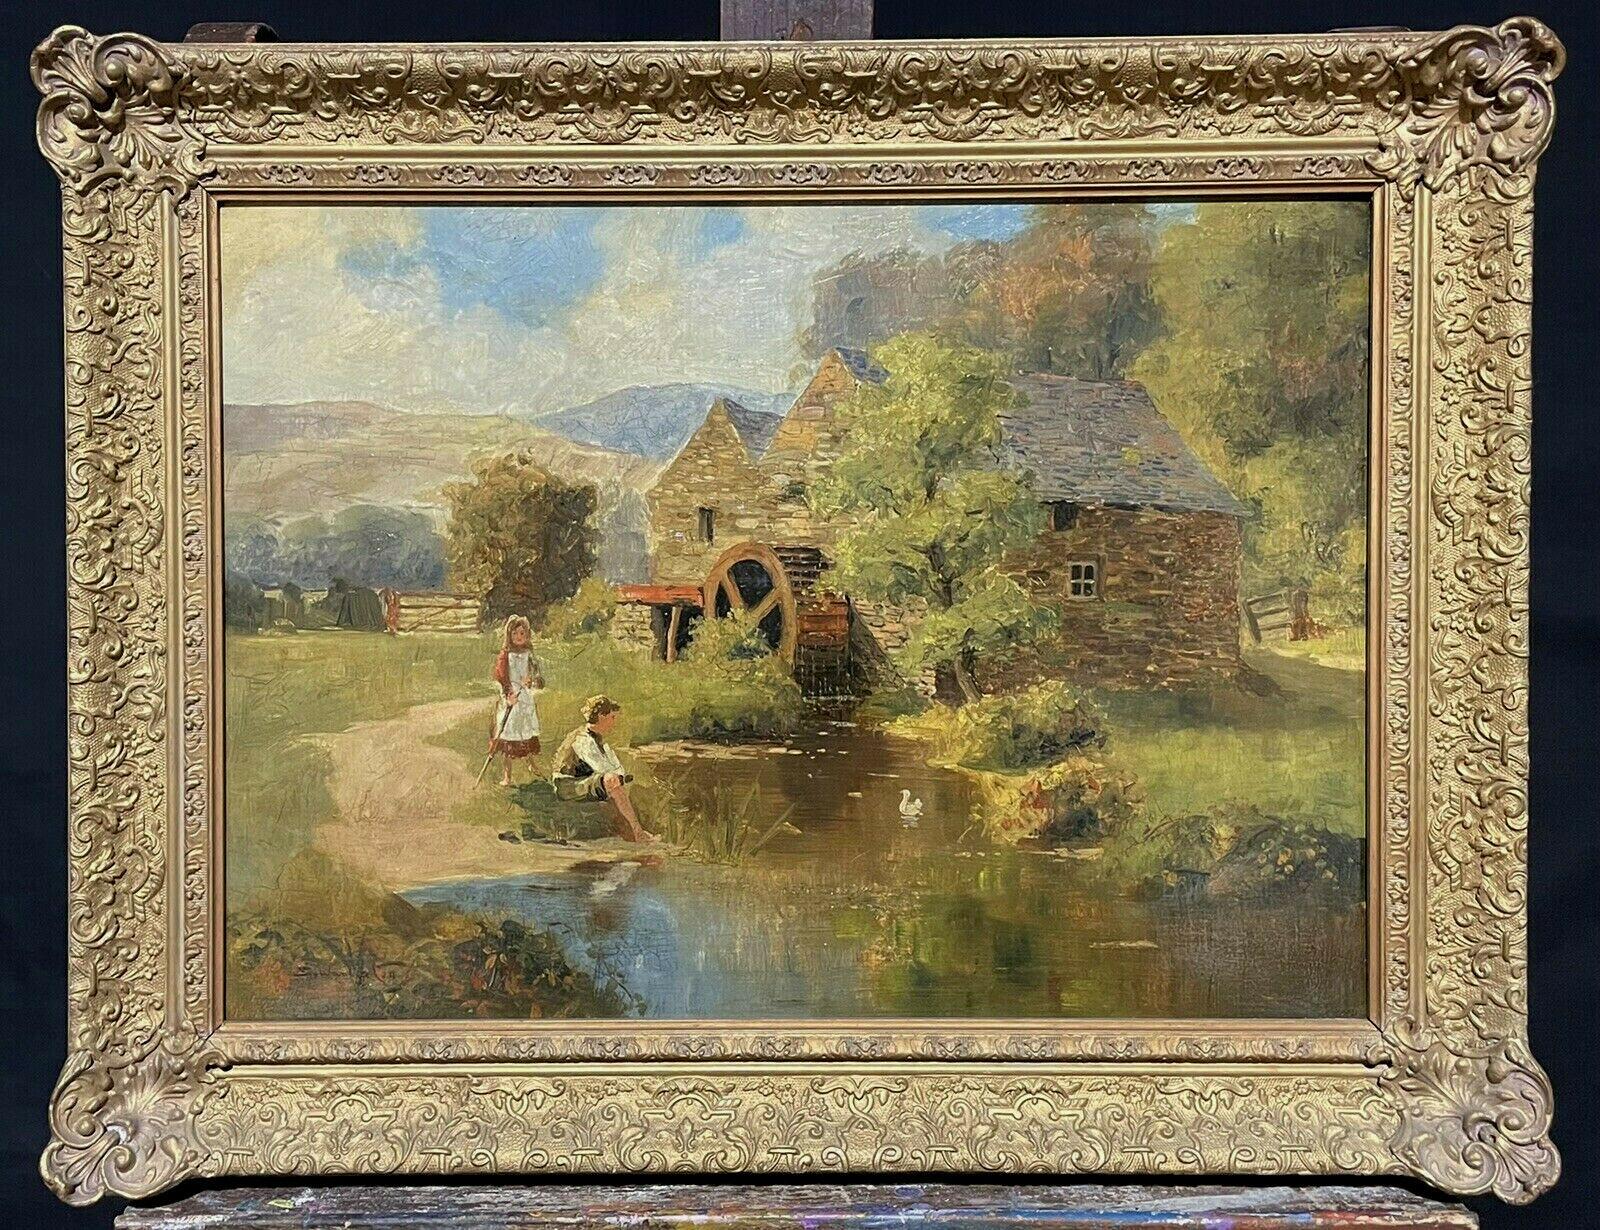 Landscape Painting S. Warburton - Peinture à l'huile espagnole SIGNÉE VICTORIAN ENGLISH - DUCKS DE STREAM EN MAINTENANT DE WATERMILL